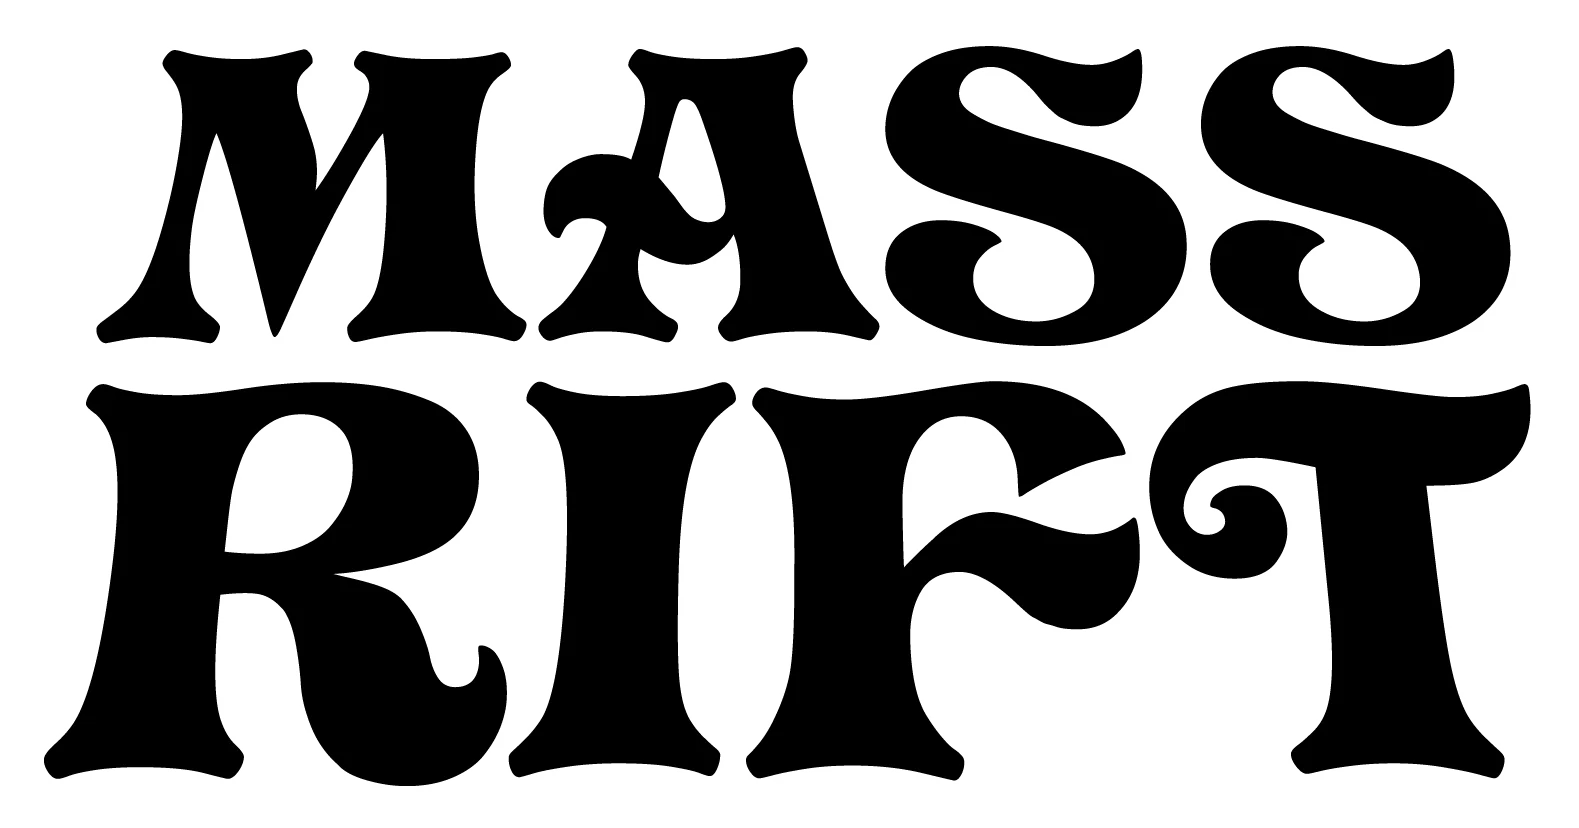 Mass Rift Logo.
Der Bandname in schwarzen, dicken, leicht schnörkeligen Buchstaben.